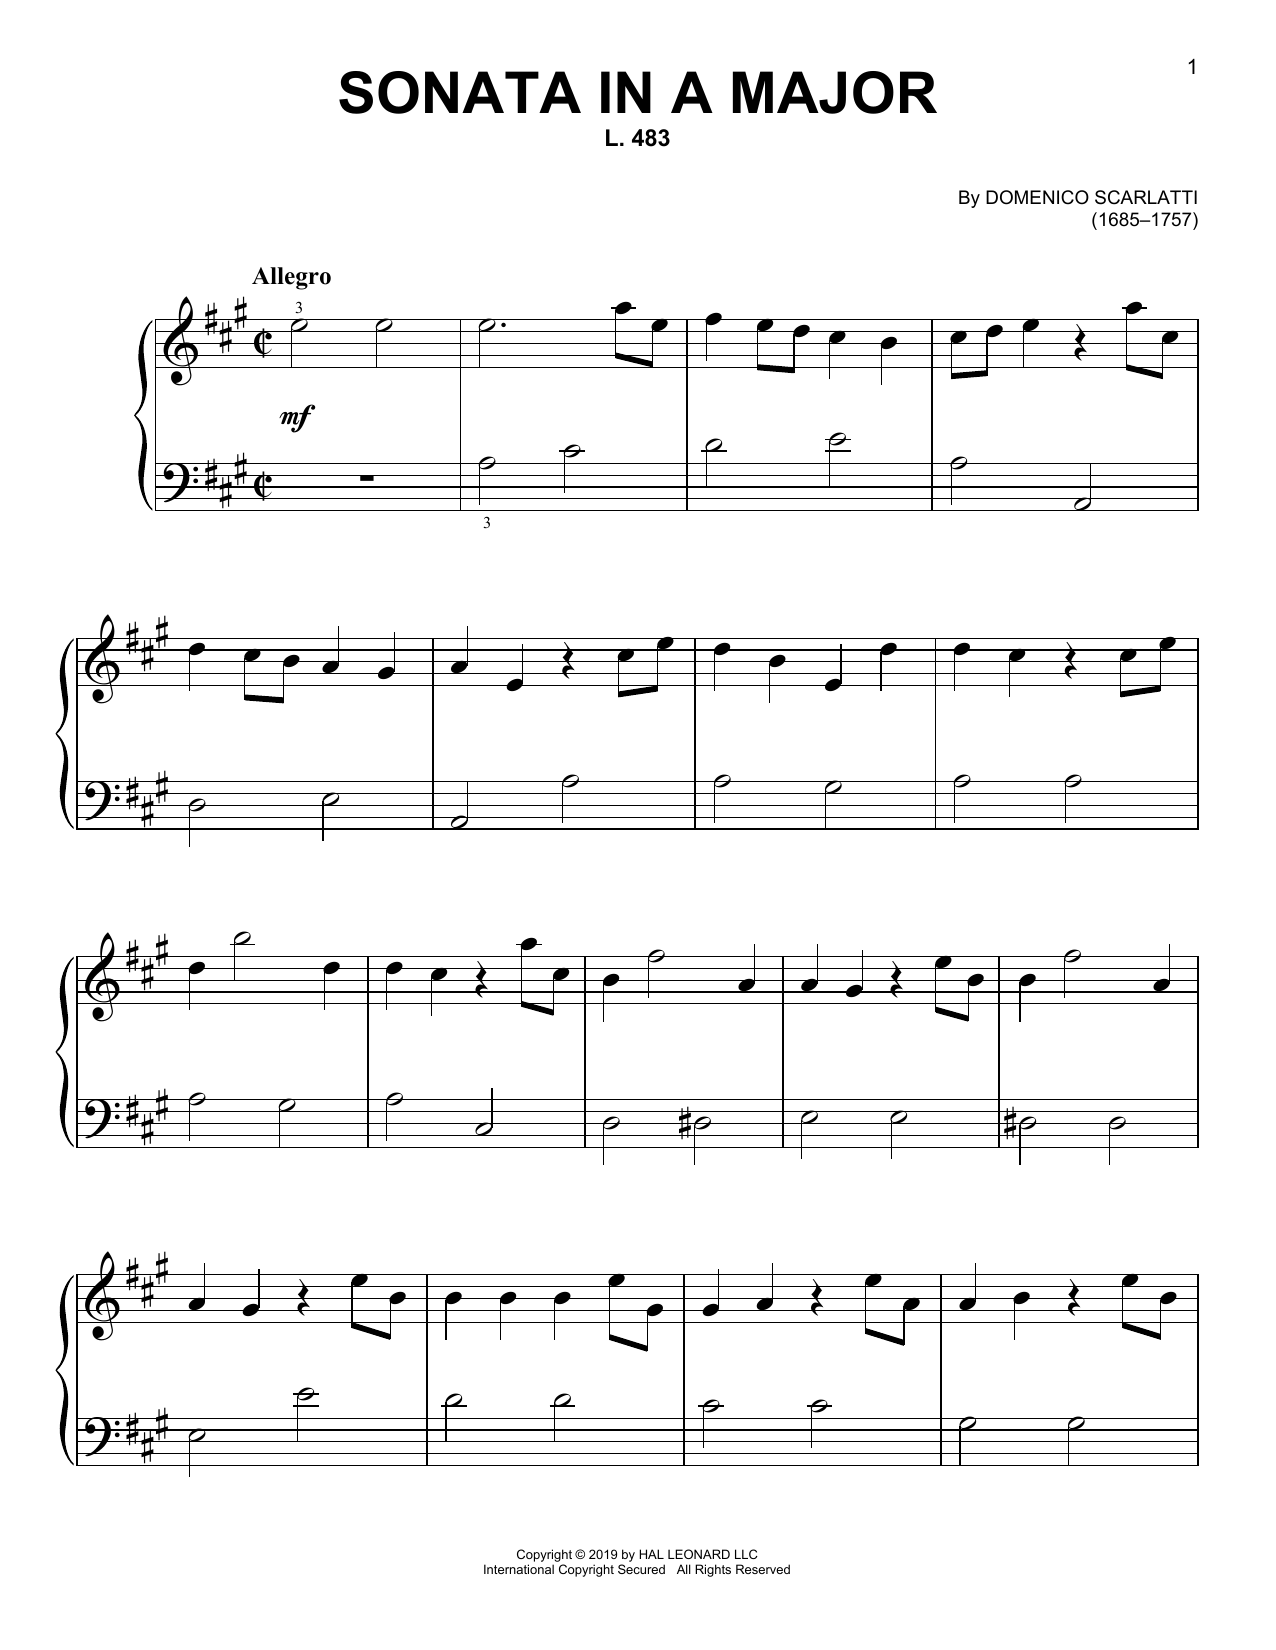 Domenico Scarlatti Sonata In A Major, L. 483 Sheet Music Notes & Chords for Piano Solo - Download or Print PDF